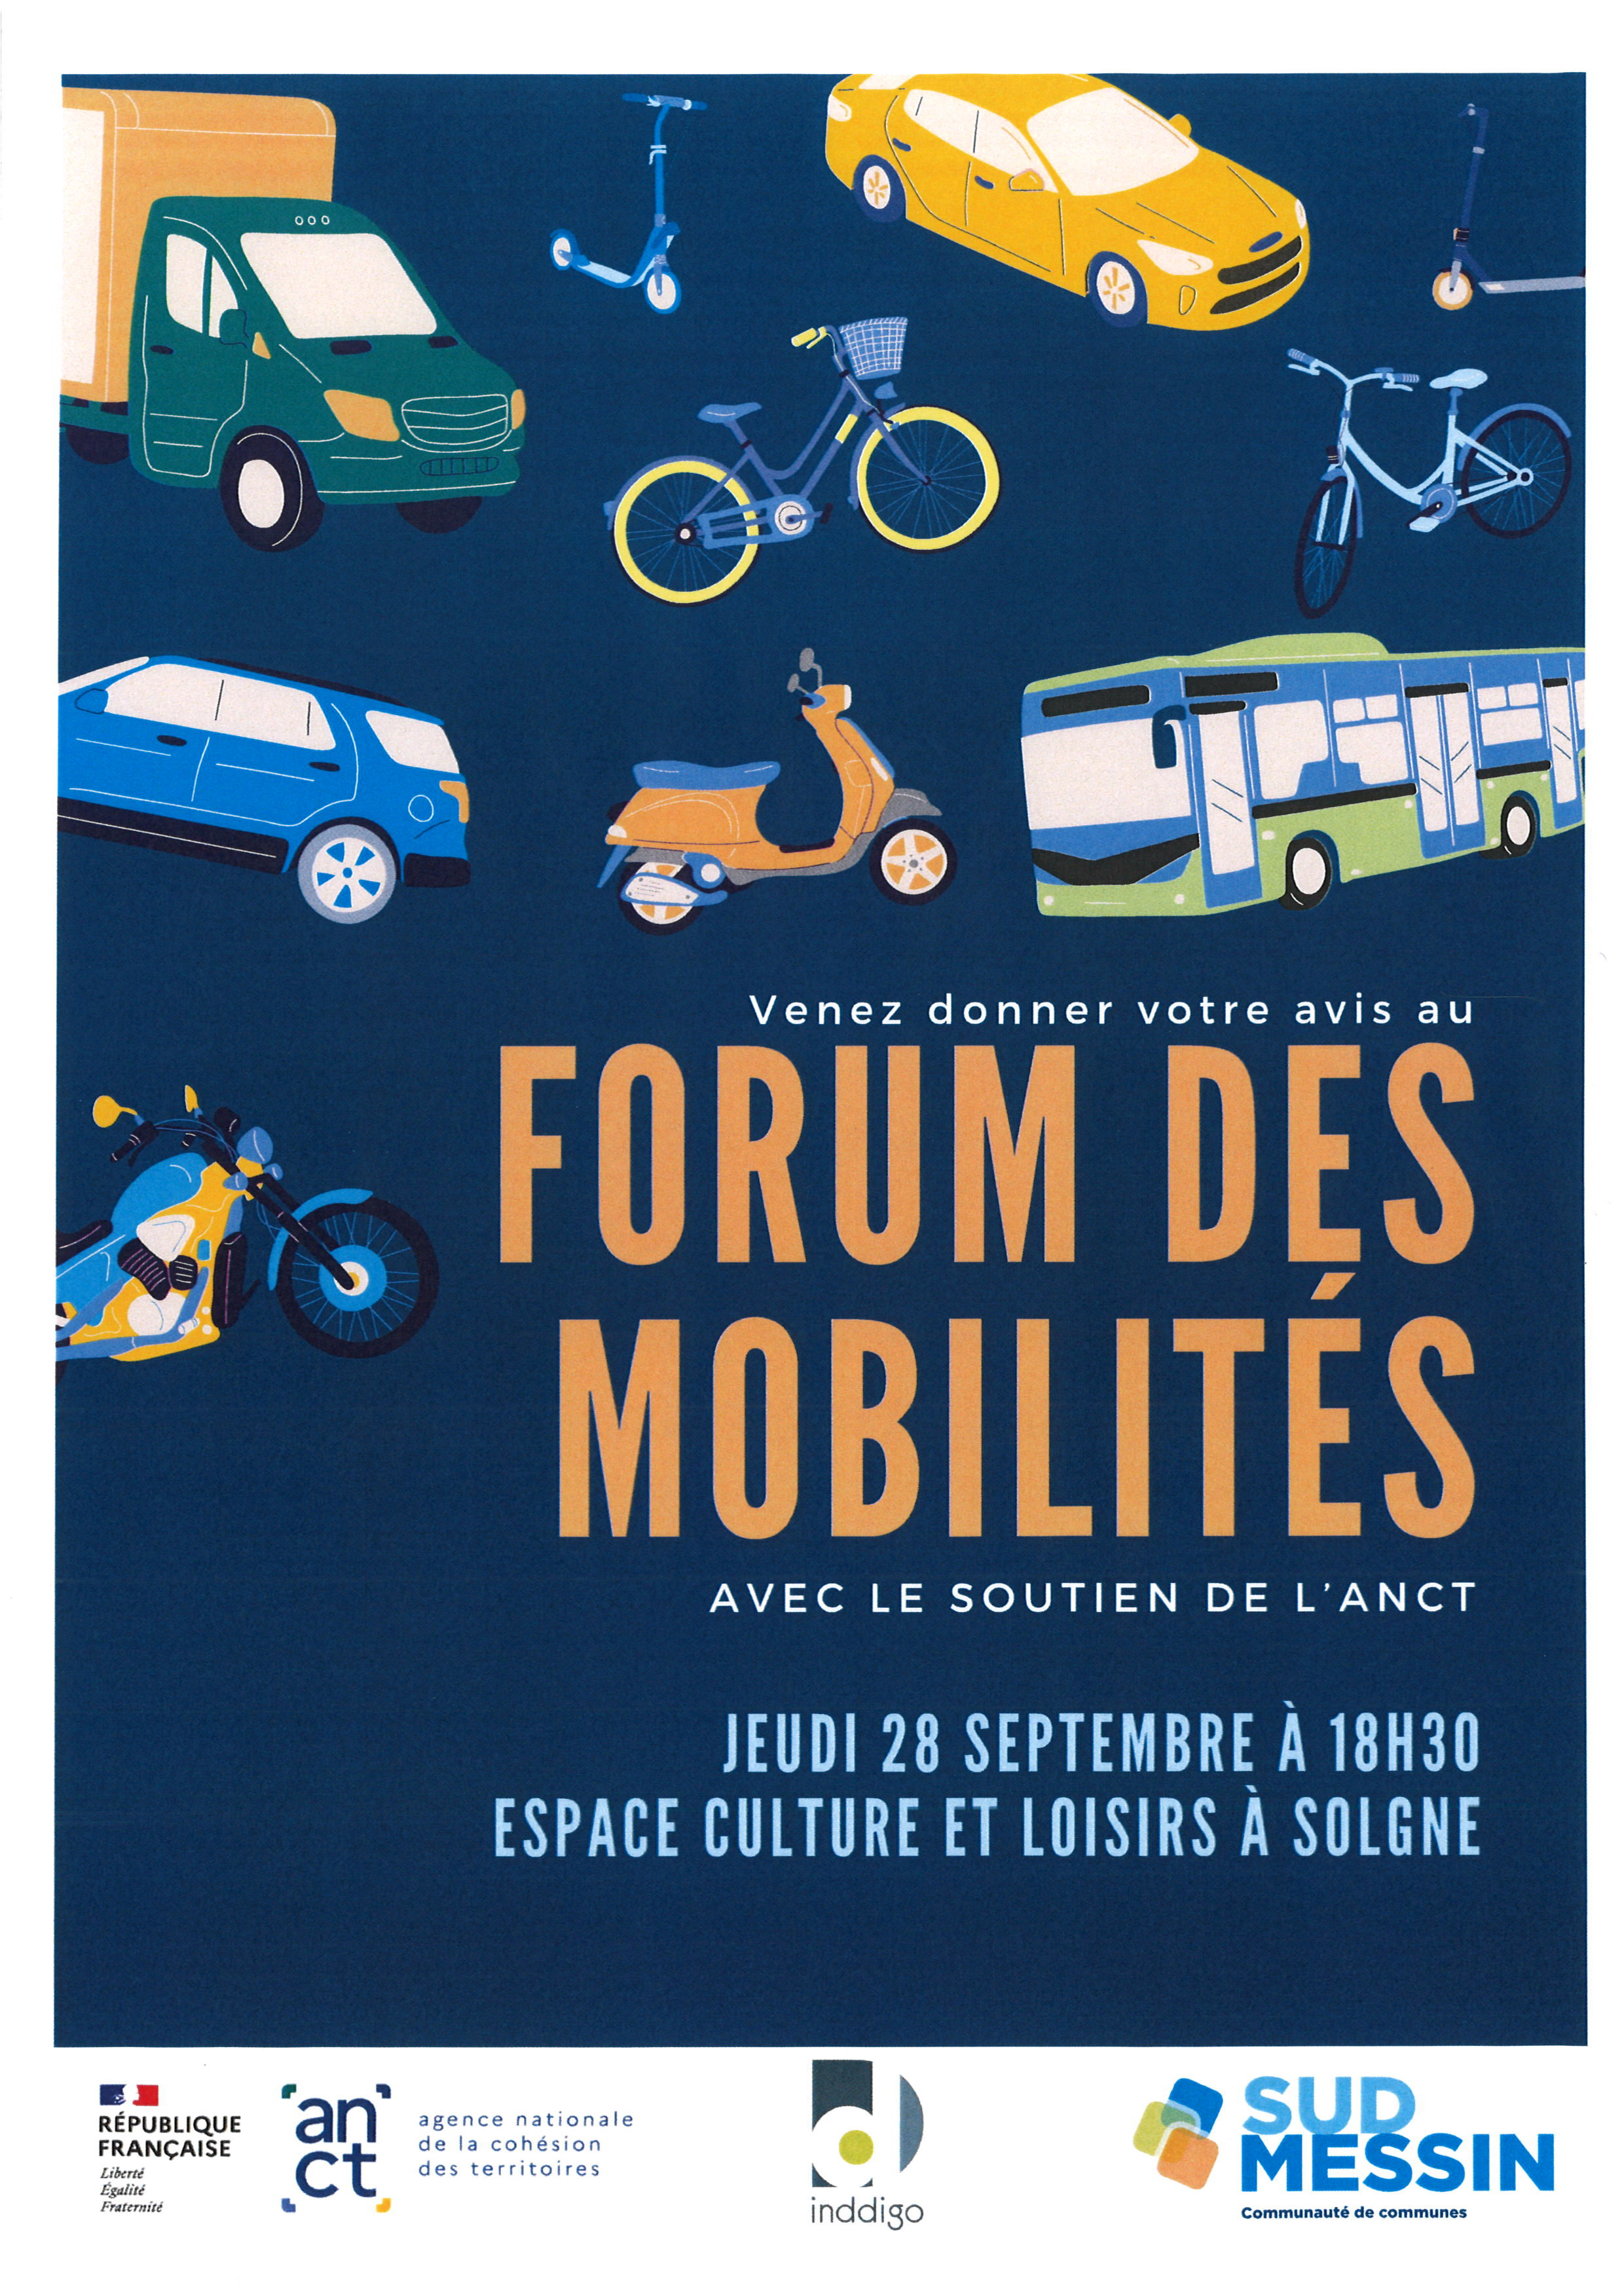 Forum des mobilites